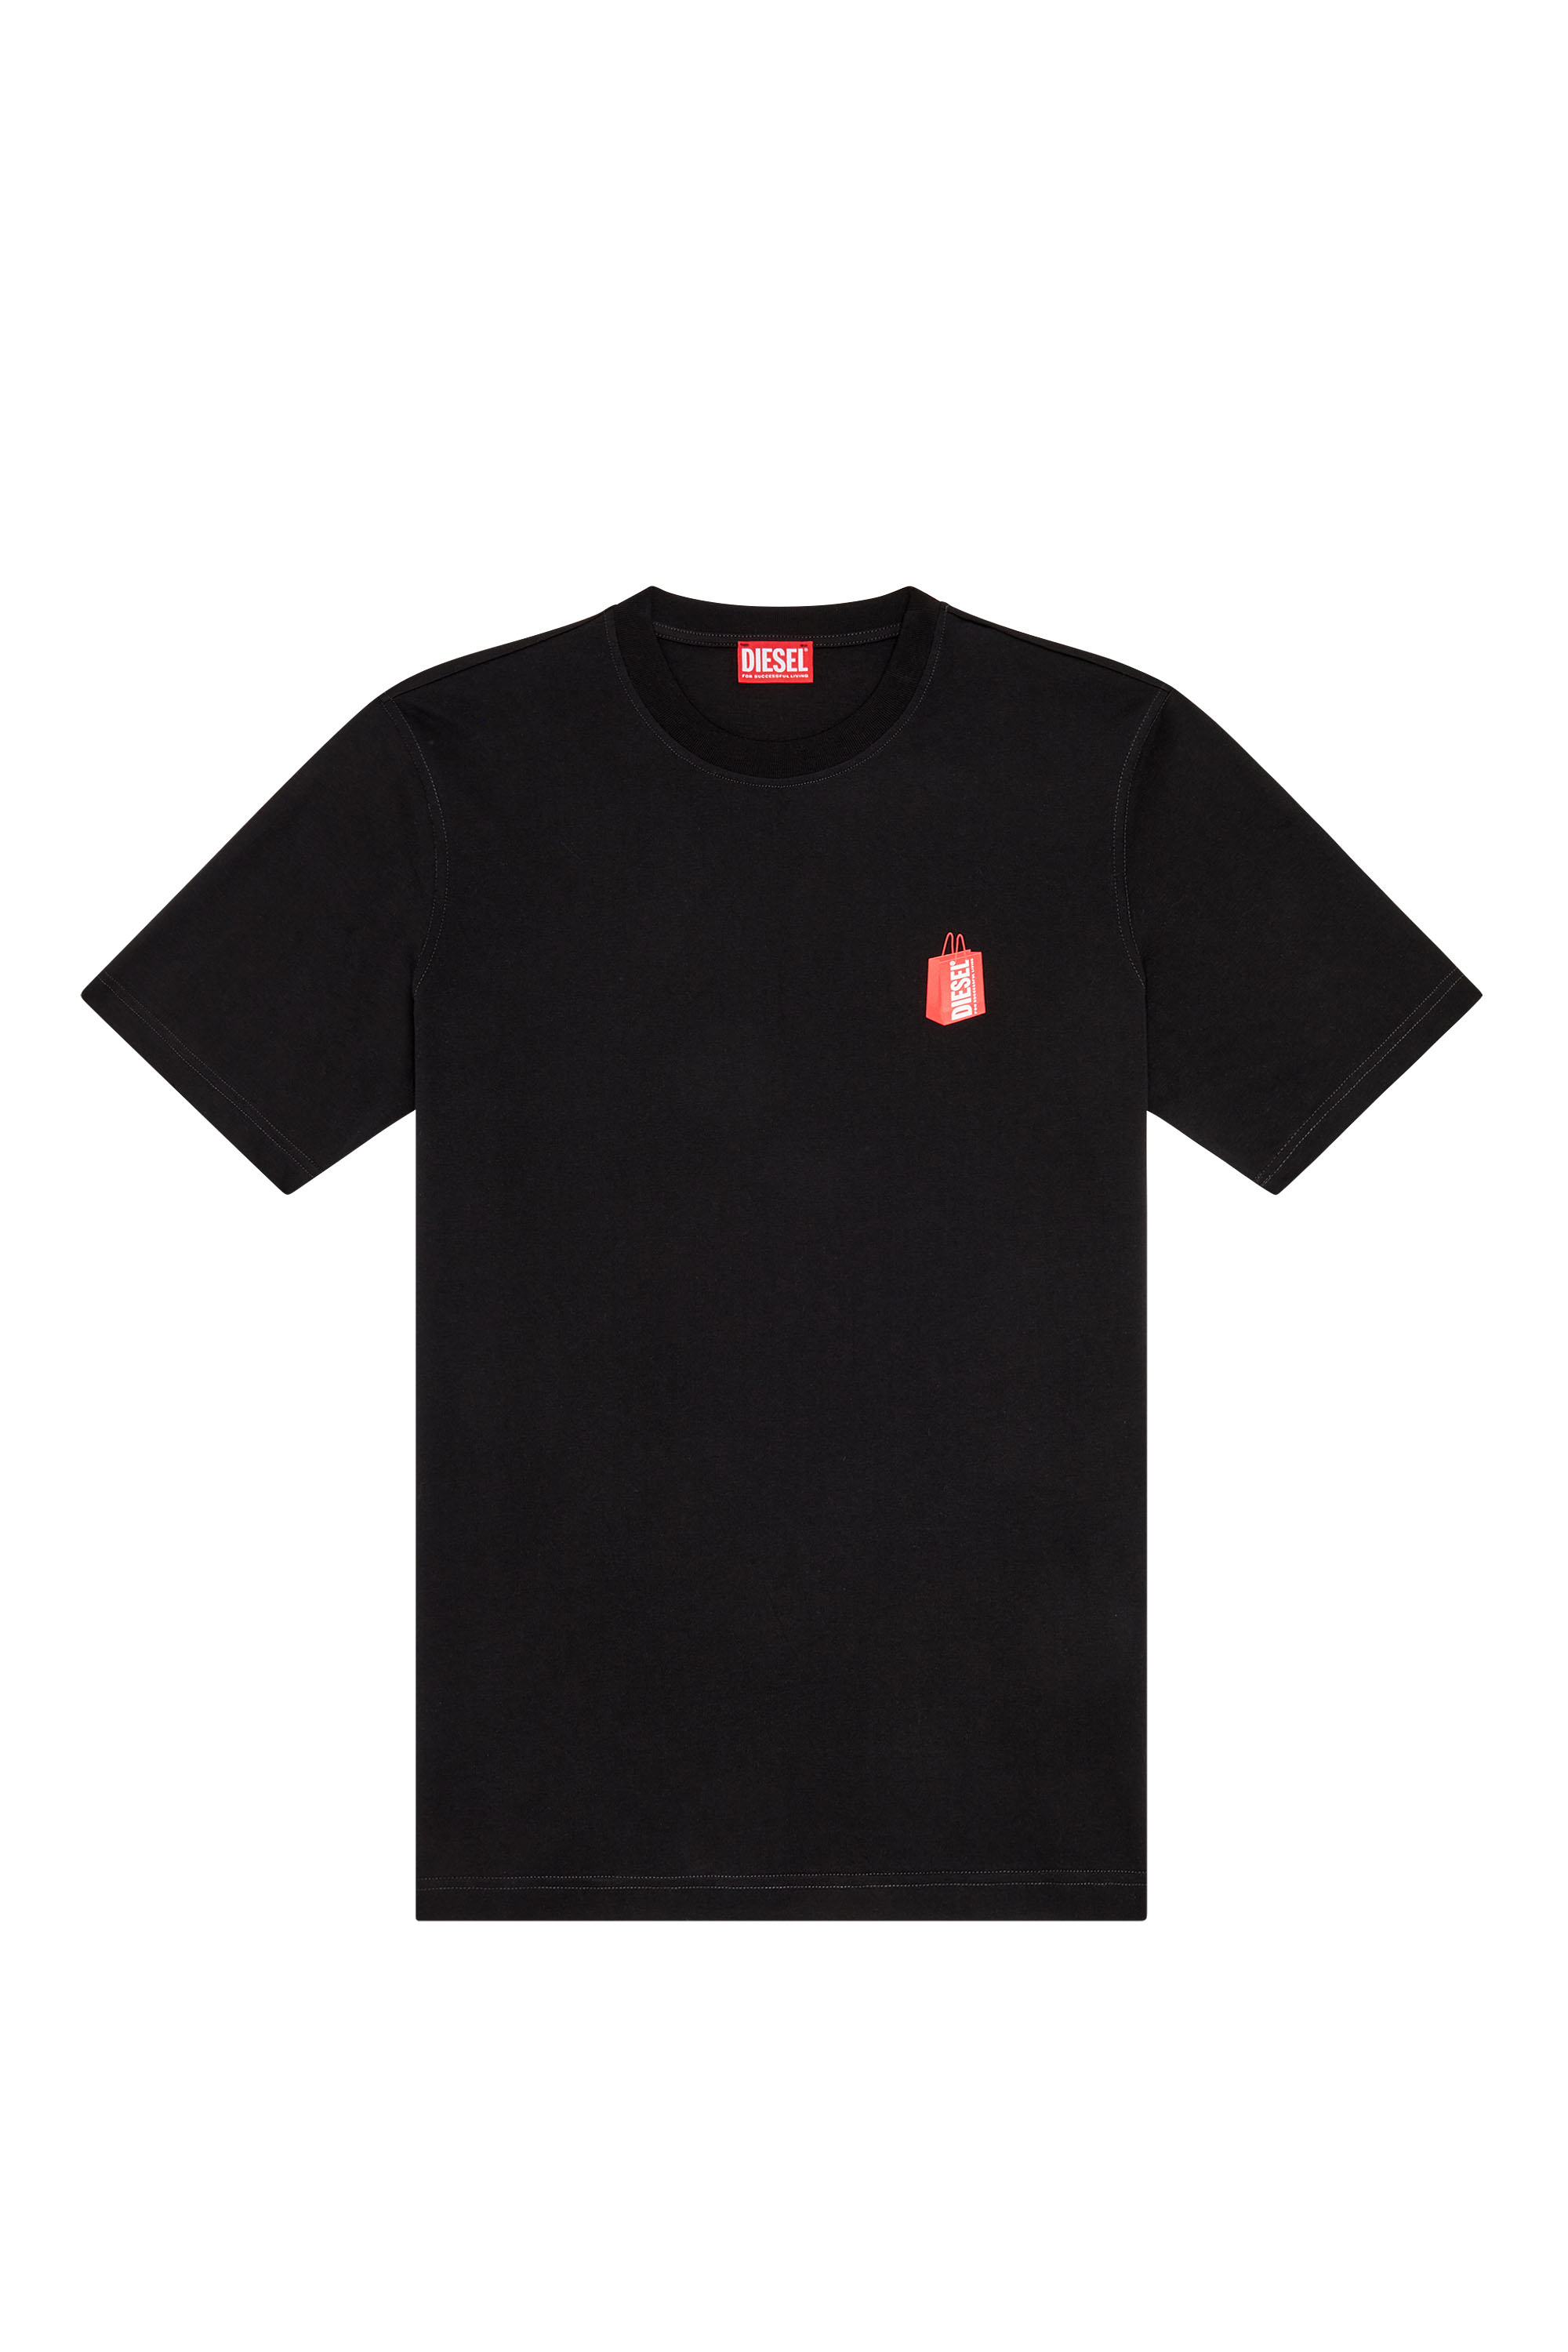 Diesel - T-JUST-N18, Man T-shirt with Diesel bag print in Black - Image 3